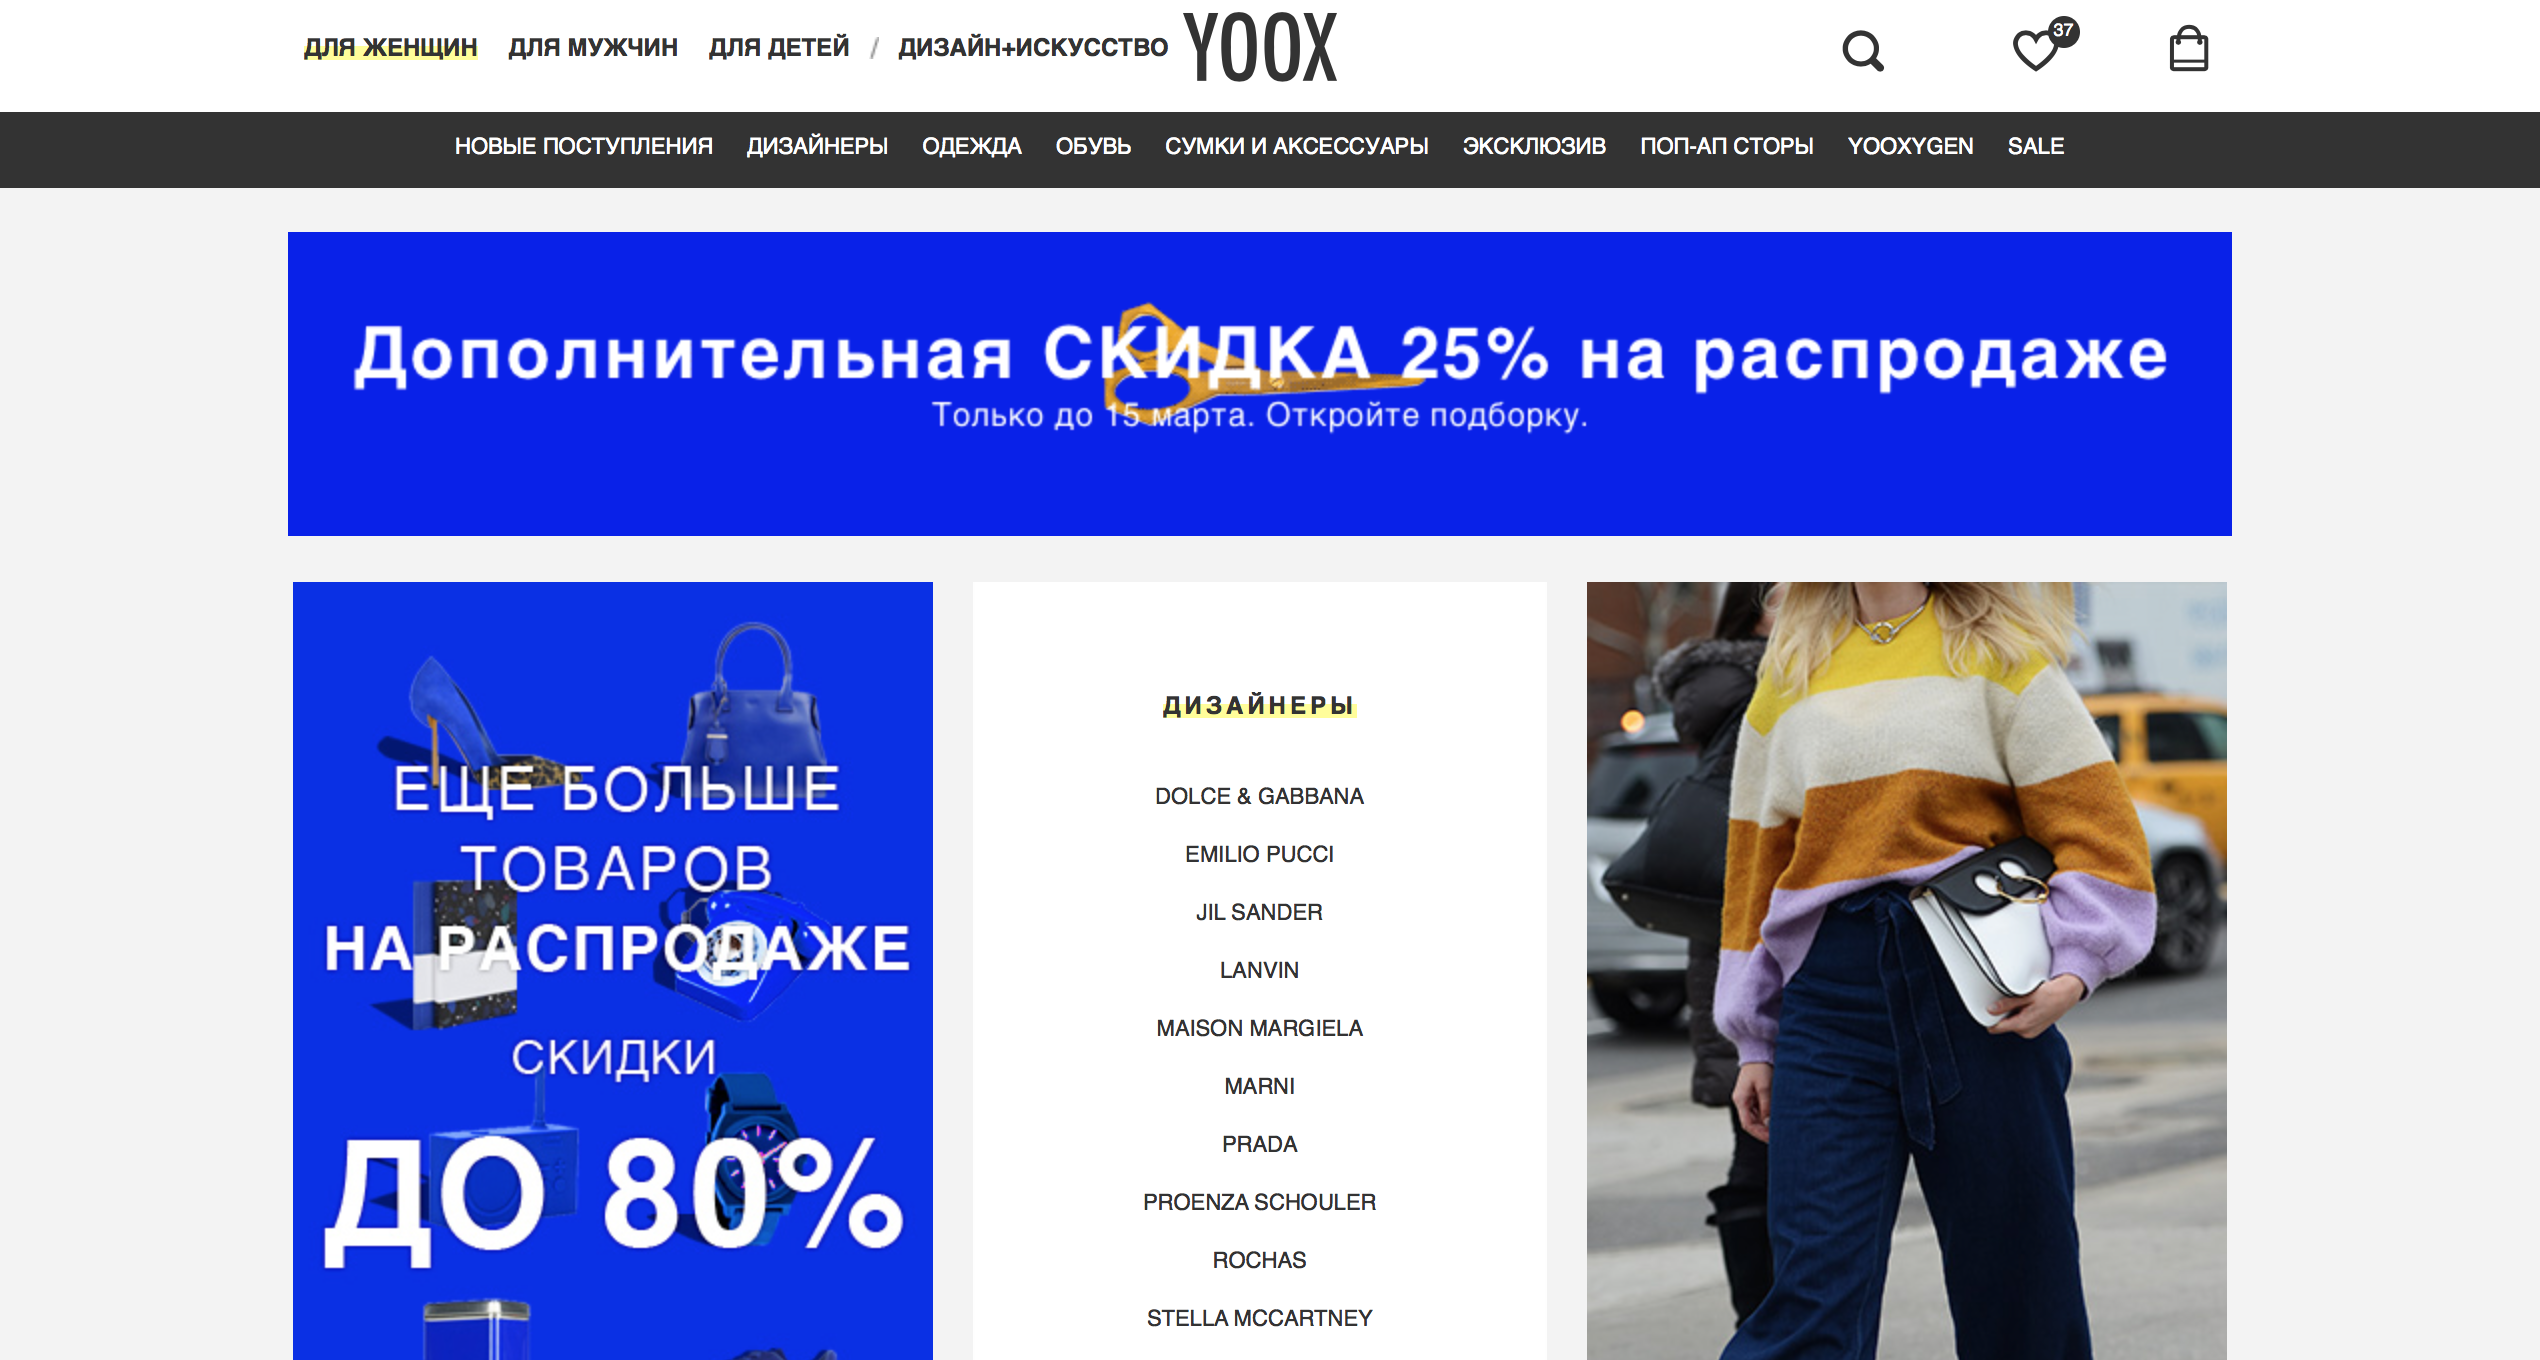 10 зарубежных интернет-магазинов одежды с достаквкой в РФ 2018-03-13 в 14.36.03